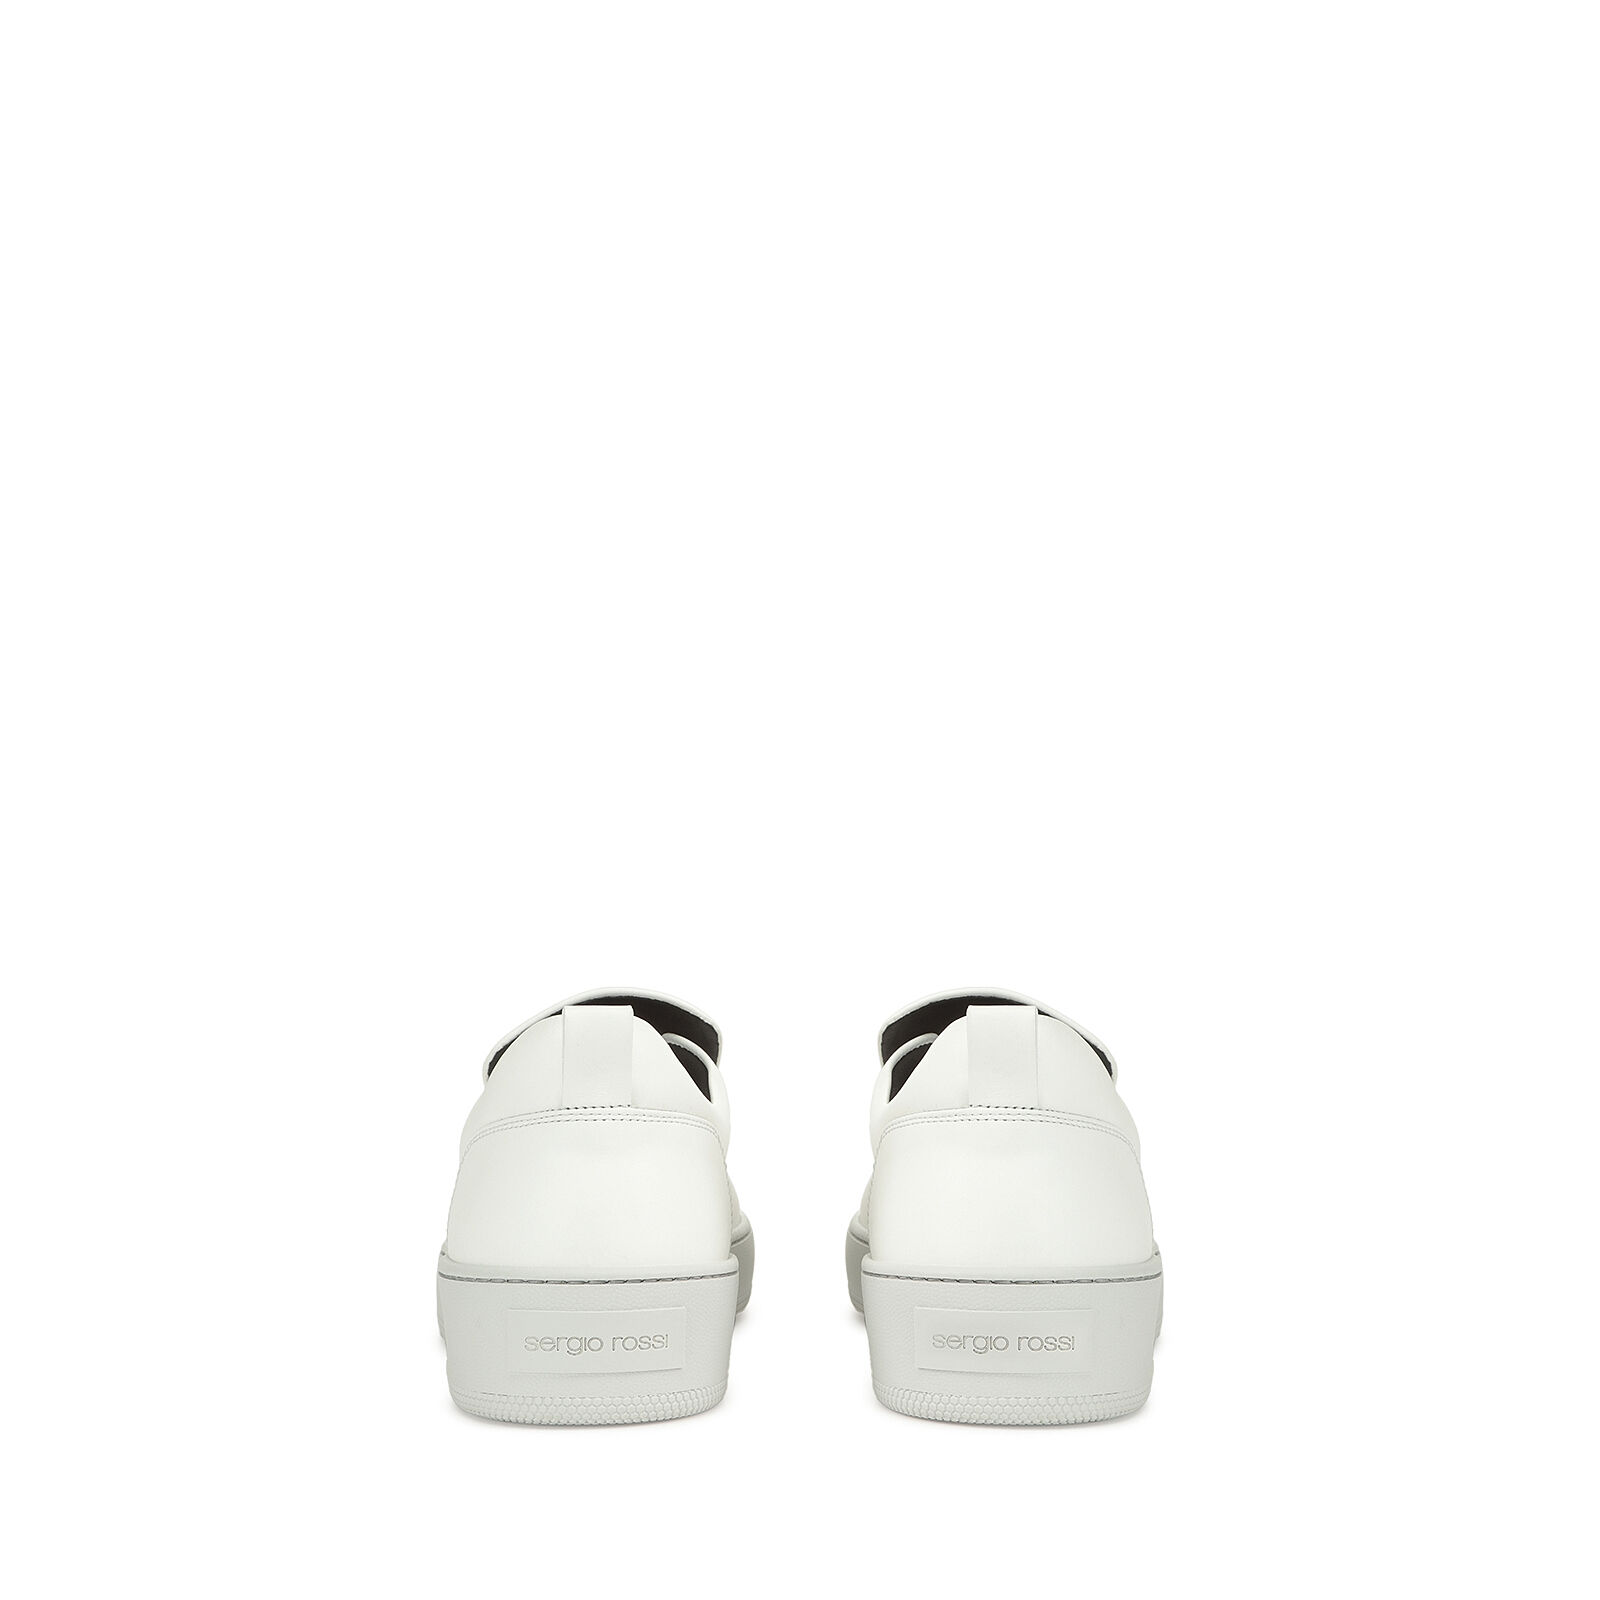 sr1 Addict - Sneakers White, 2